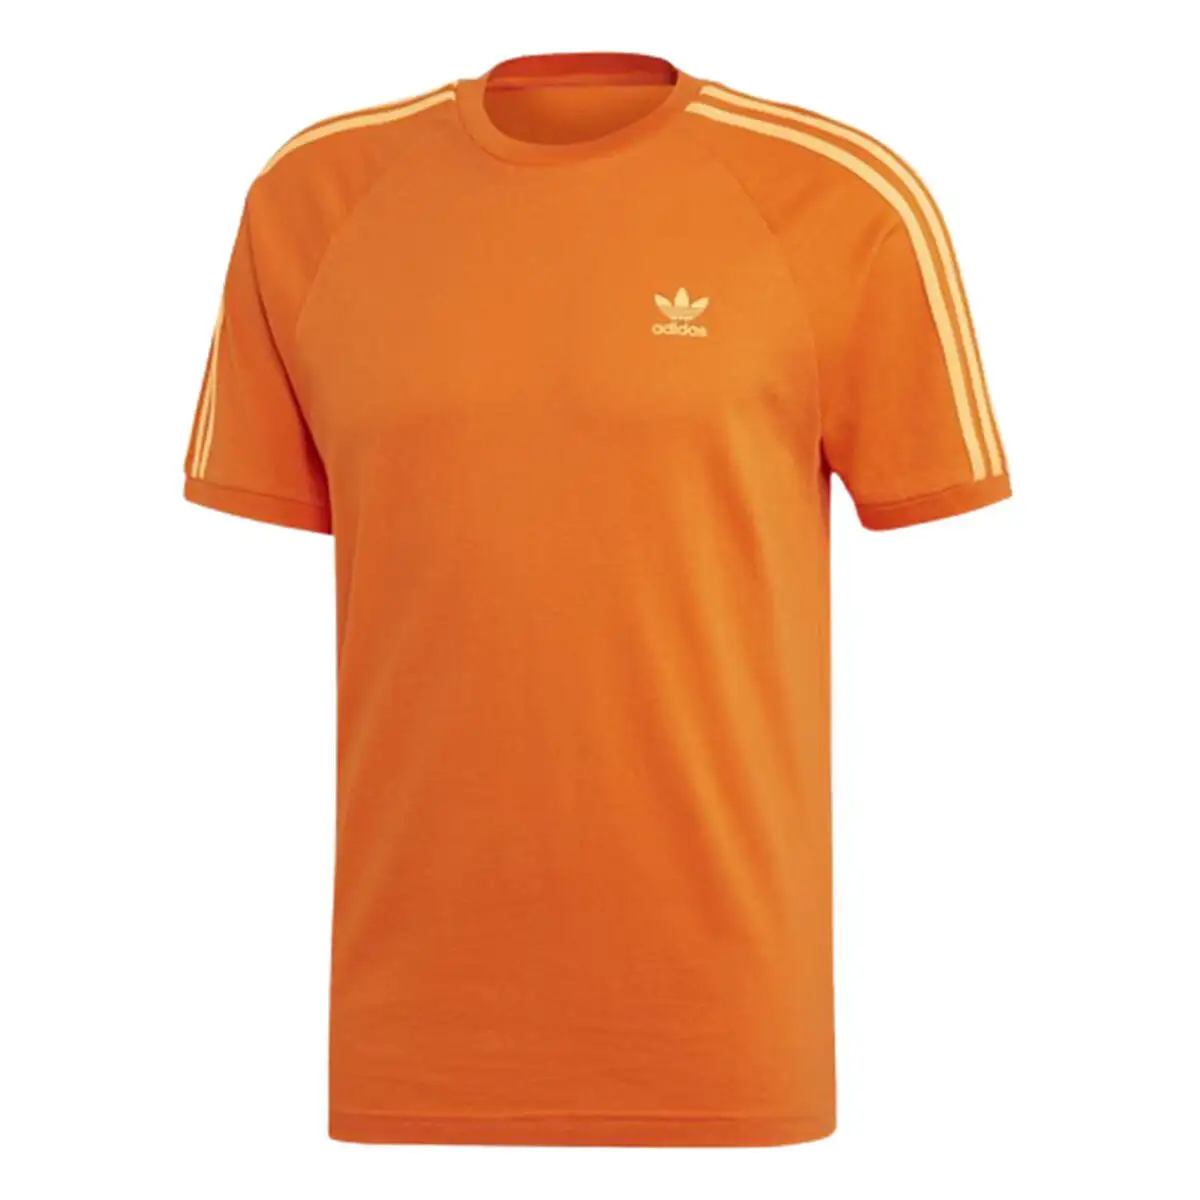 T shirt a manches courtes homme adidas 3 stripes orange_6432. Bienvenue chez DIAYTAR SENEGAL - Où le Shopping Devient une Aventure. Découvrez notre collection diversifiée et explorez des produits qui reflètent la diversité du Sénégal.